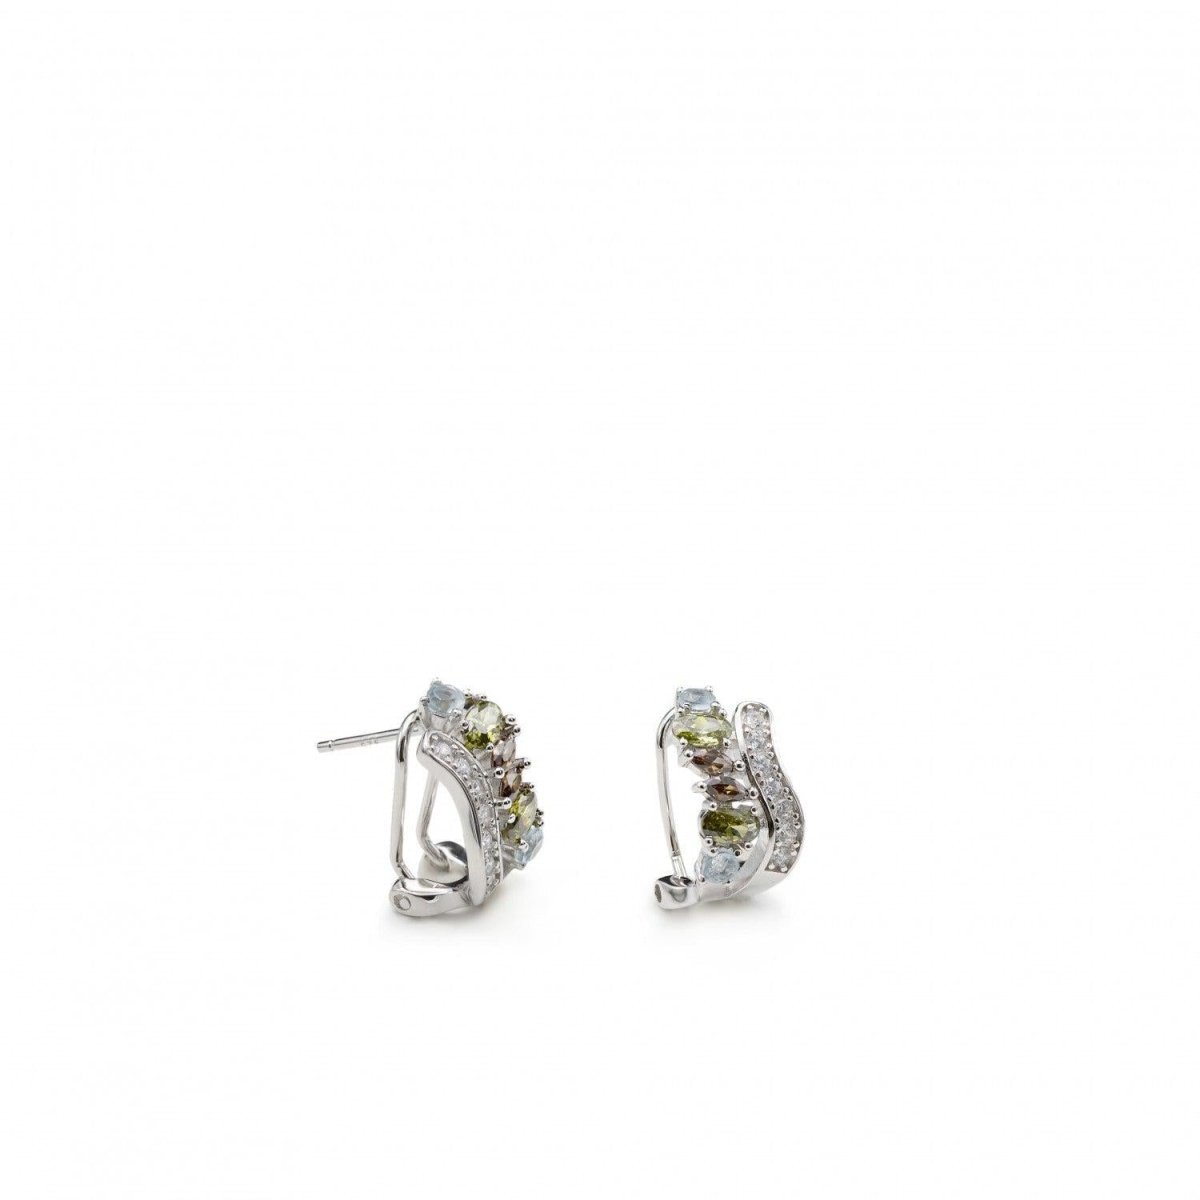 Earrings - Omega clasp earrings in silver small green cross design